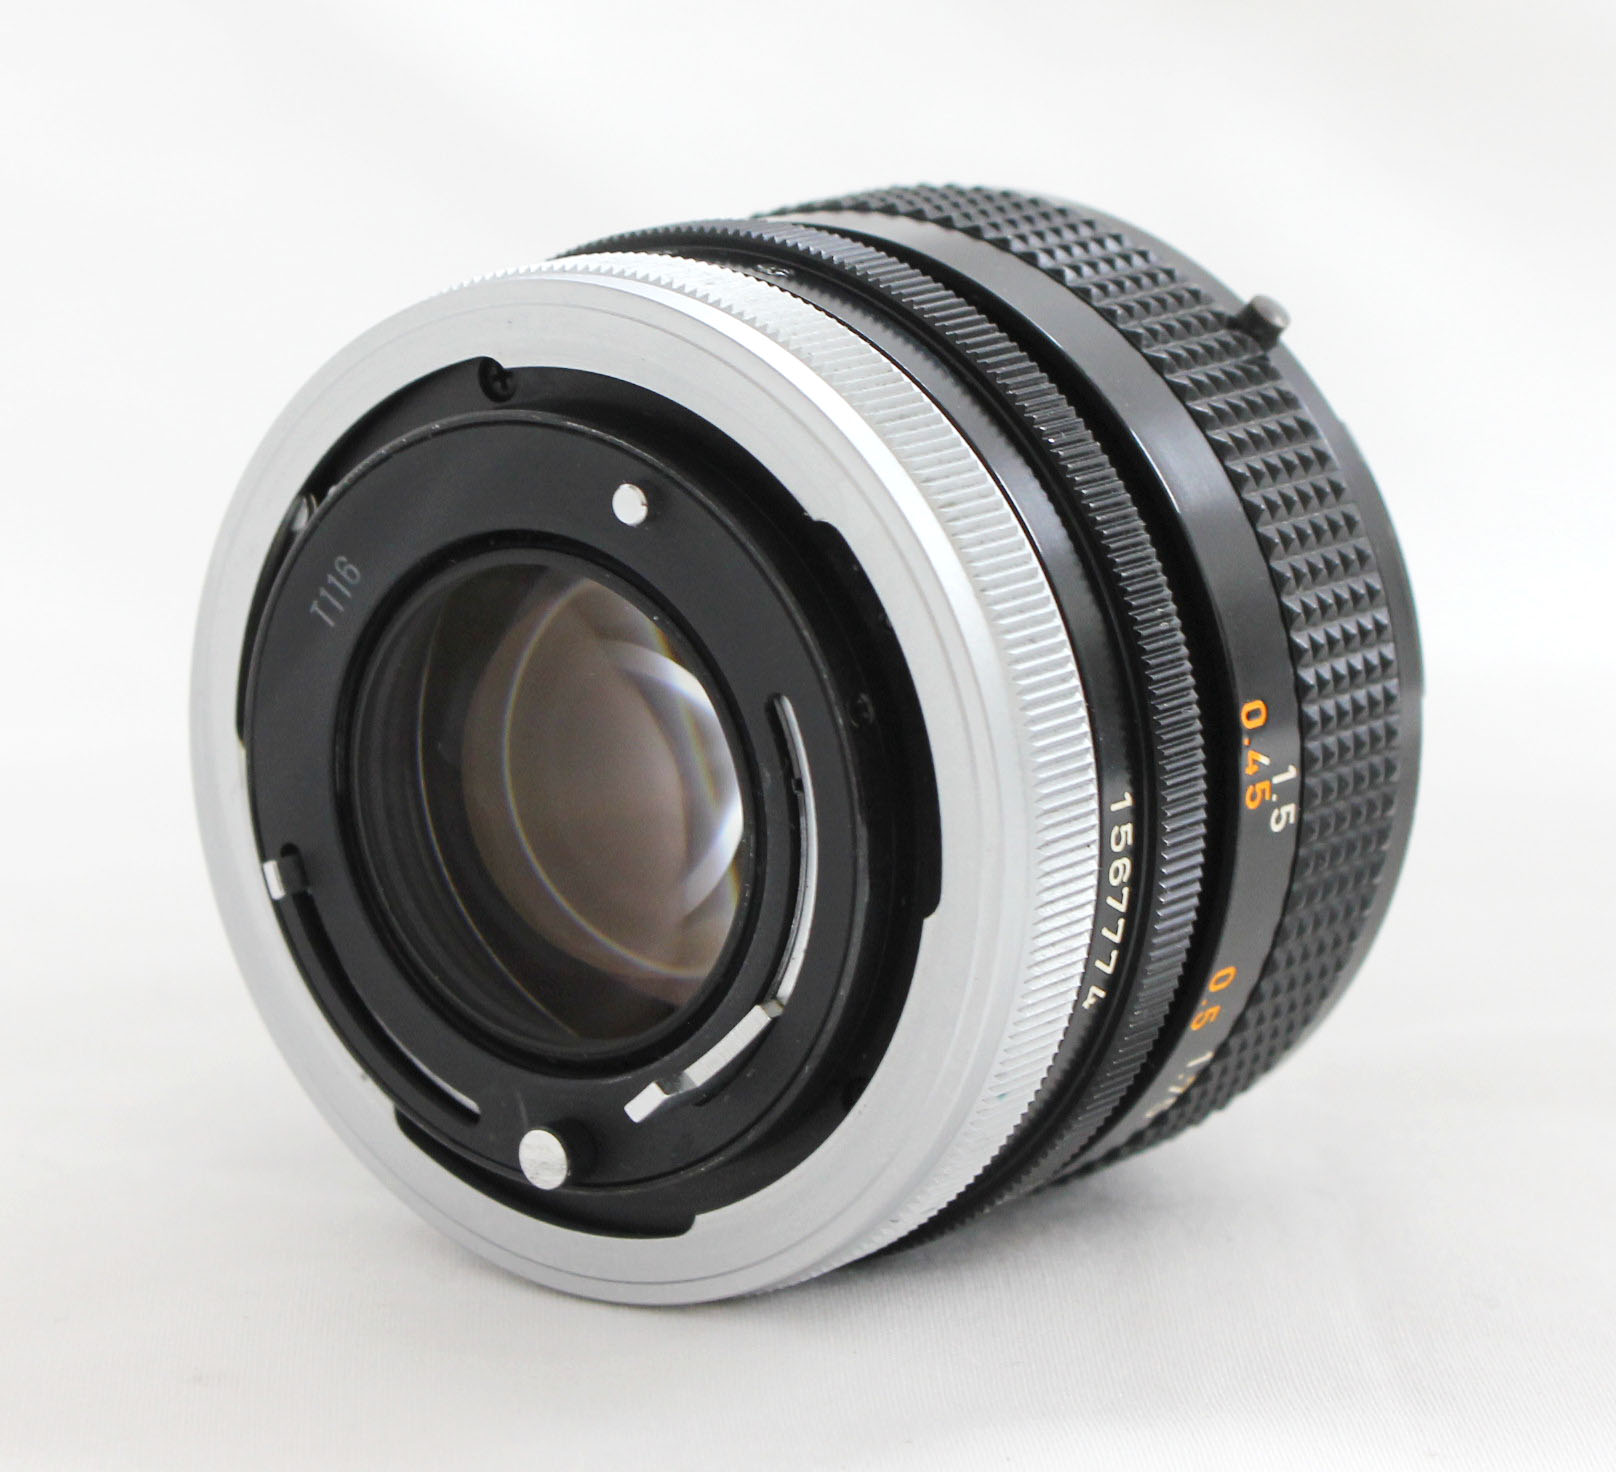 Canon AE-1 35mm SLR Camera with FD 50mm F/1.4 S.S.C. Lens from Japan Photo 13